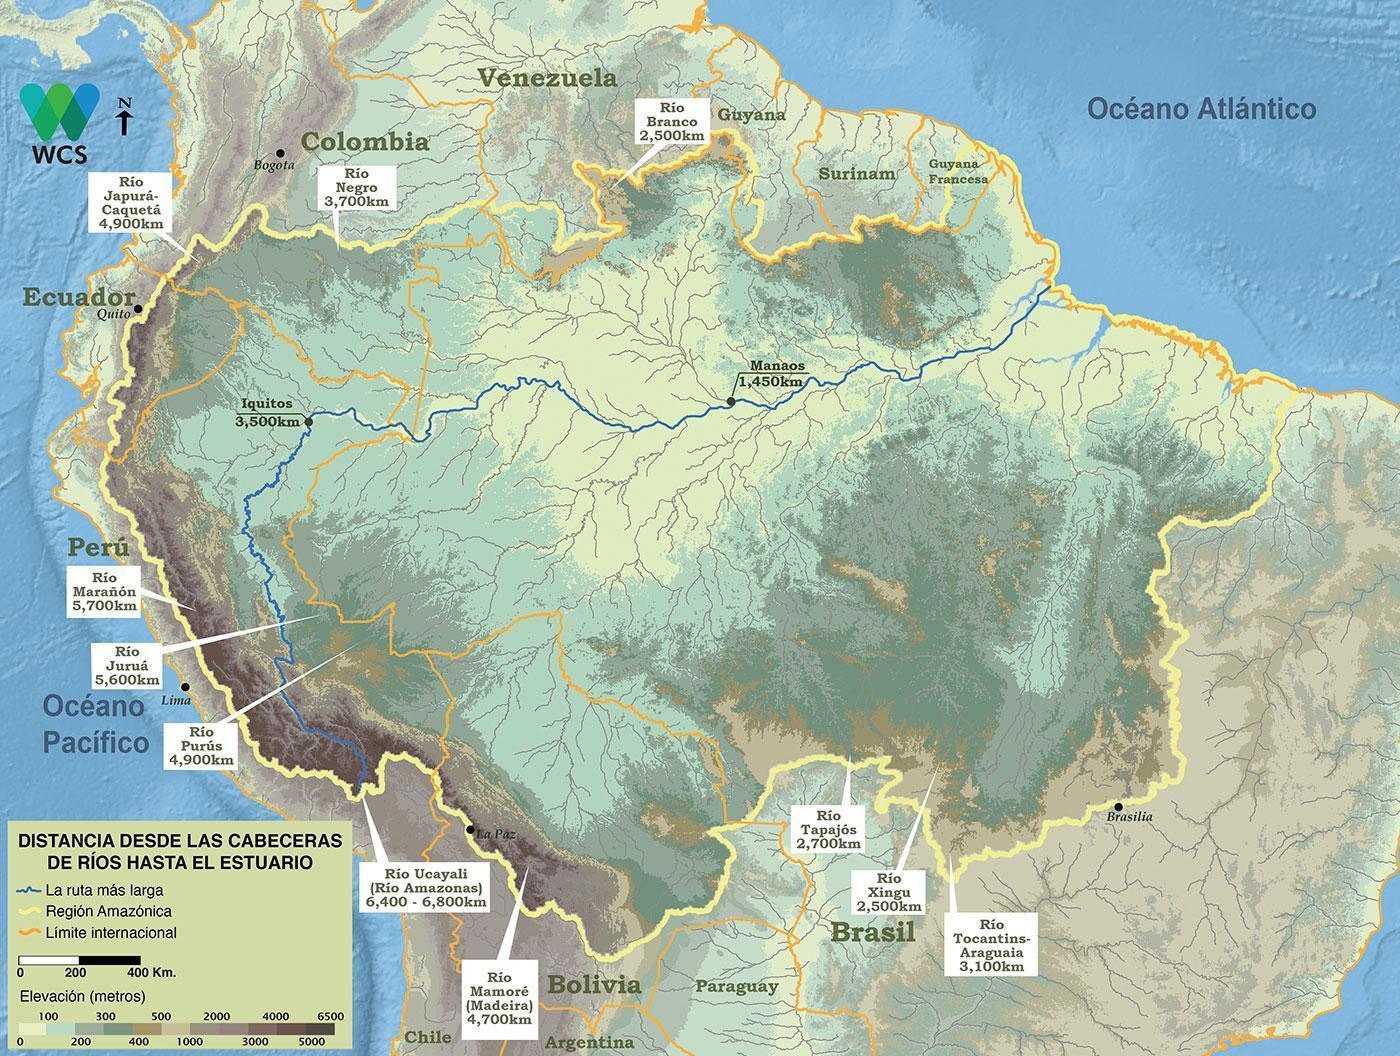 La cabecera del río Amazonas más distante se ubica a casi 6,800 kilómetros desde el Atlántico luego de considerar las distancias siguiendo el curso sinuoso de los grandes canales y tributarios. 